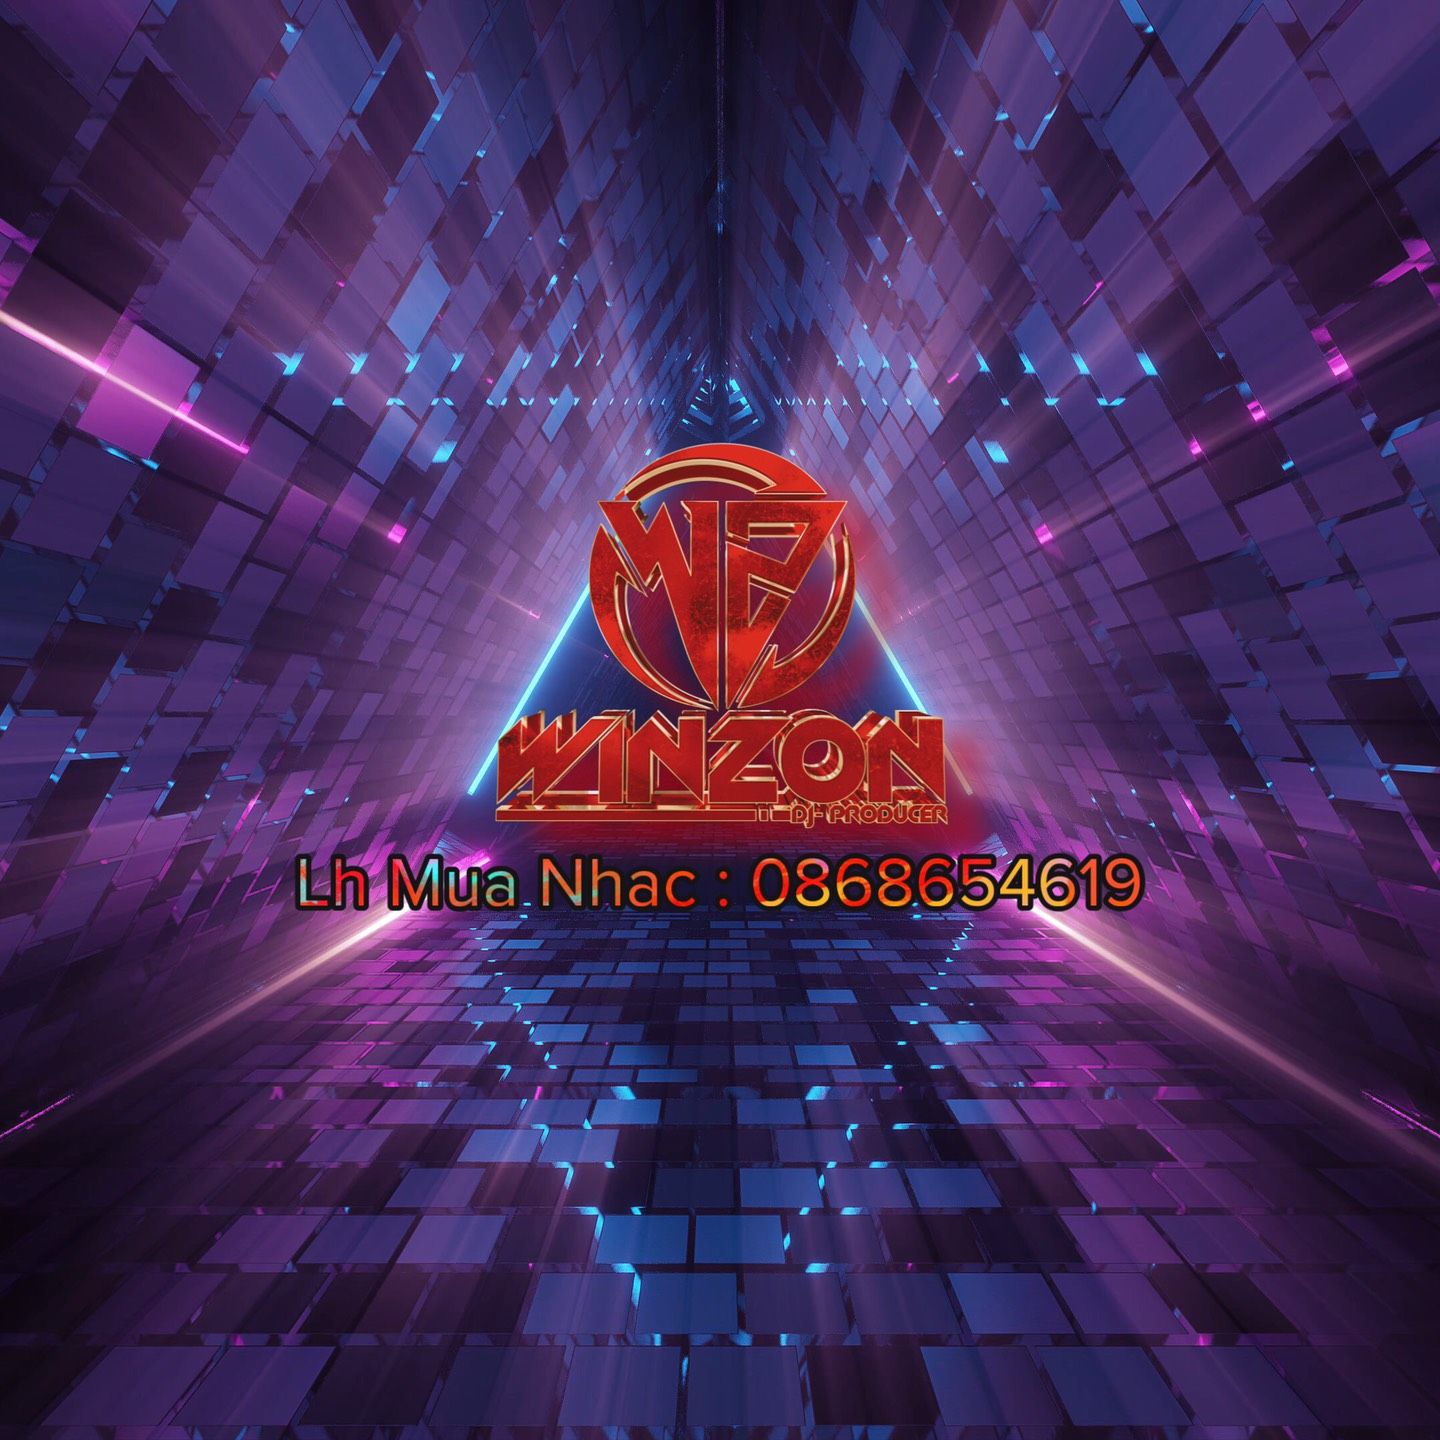 Ներբեռնե Anaconda 2021 - Winzon Remix